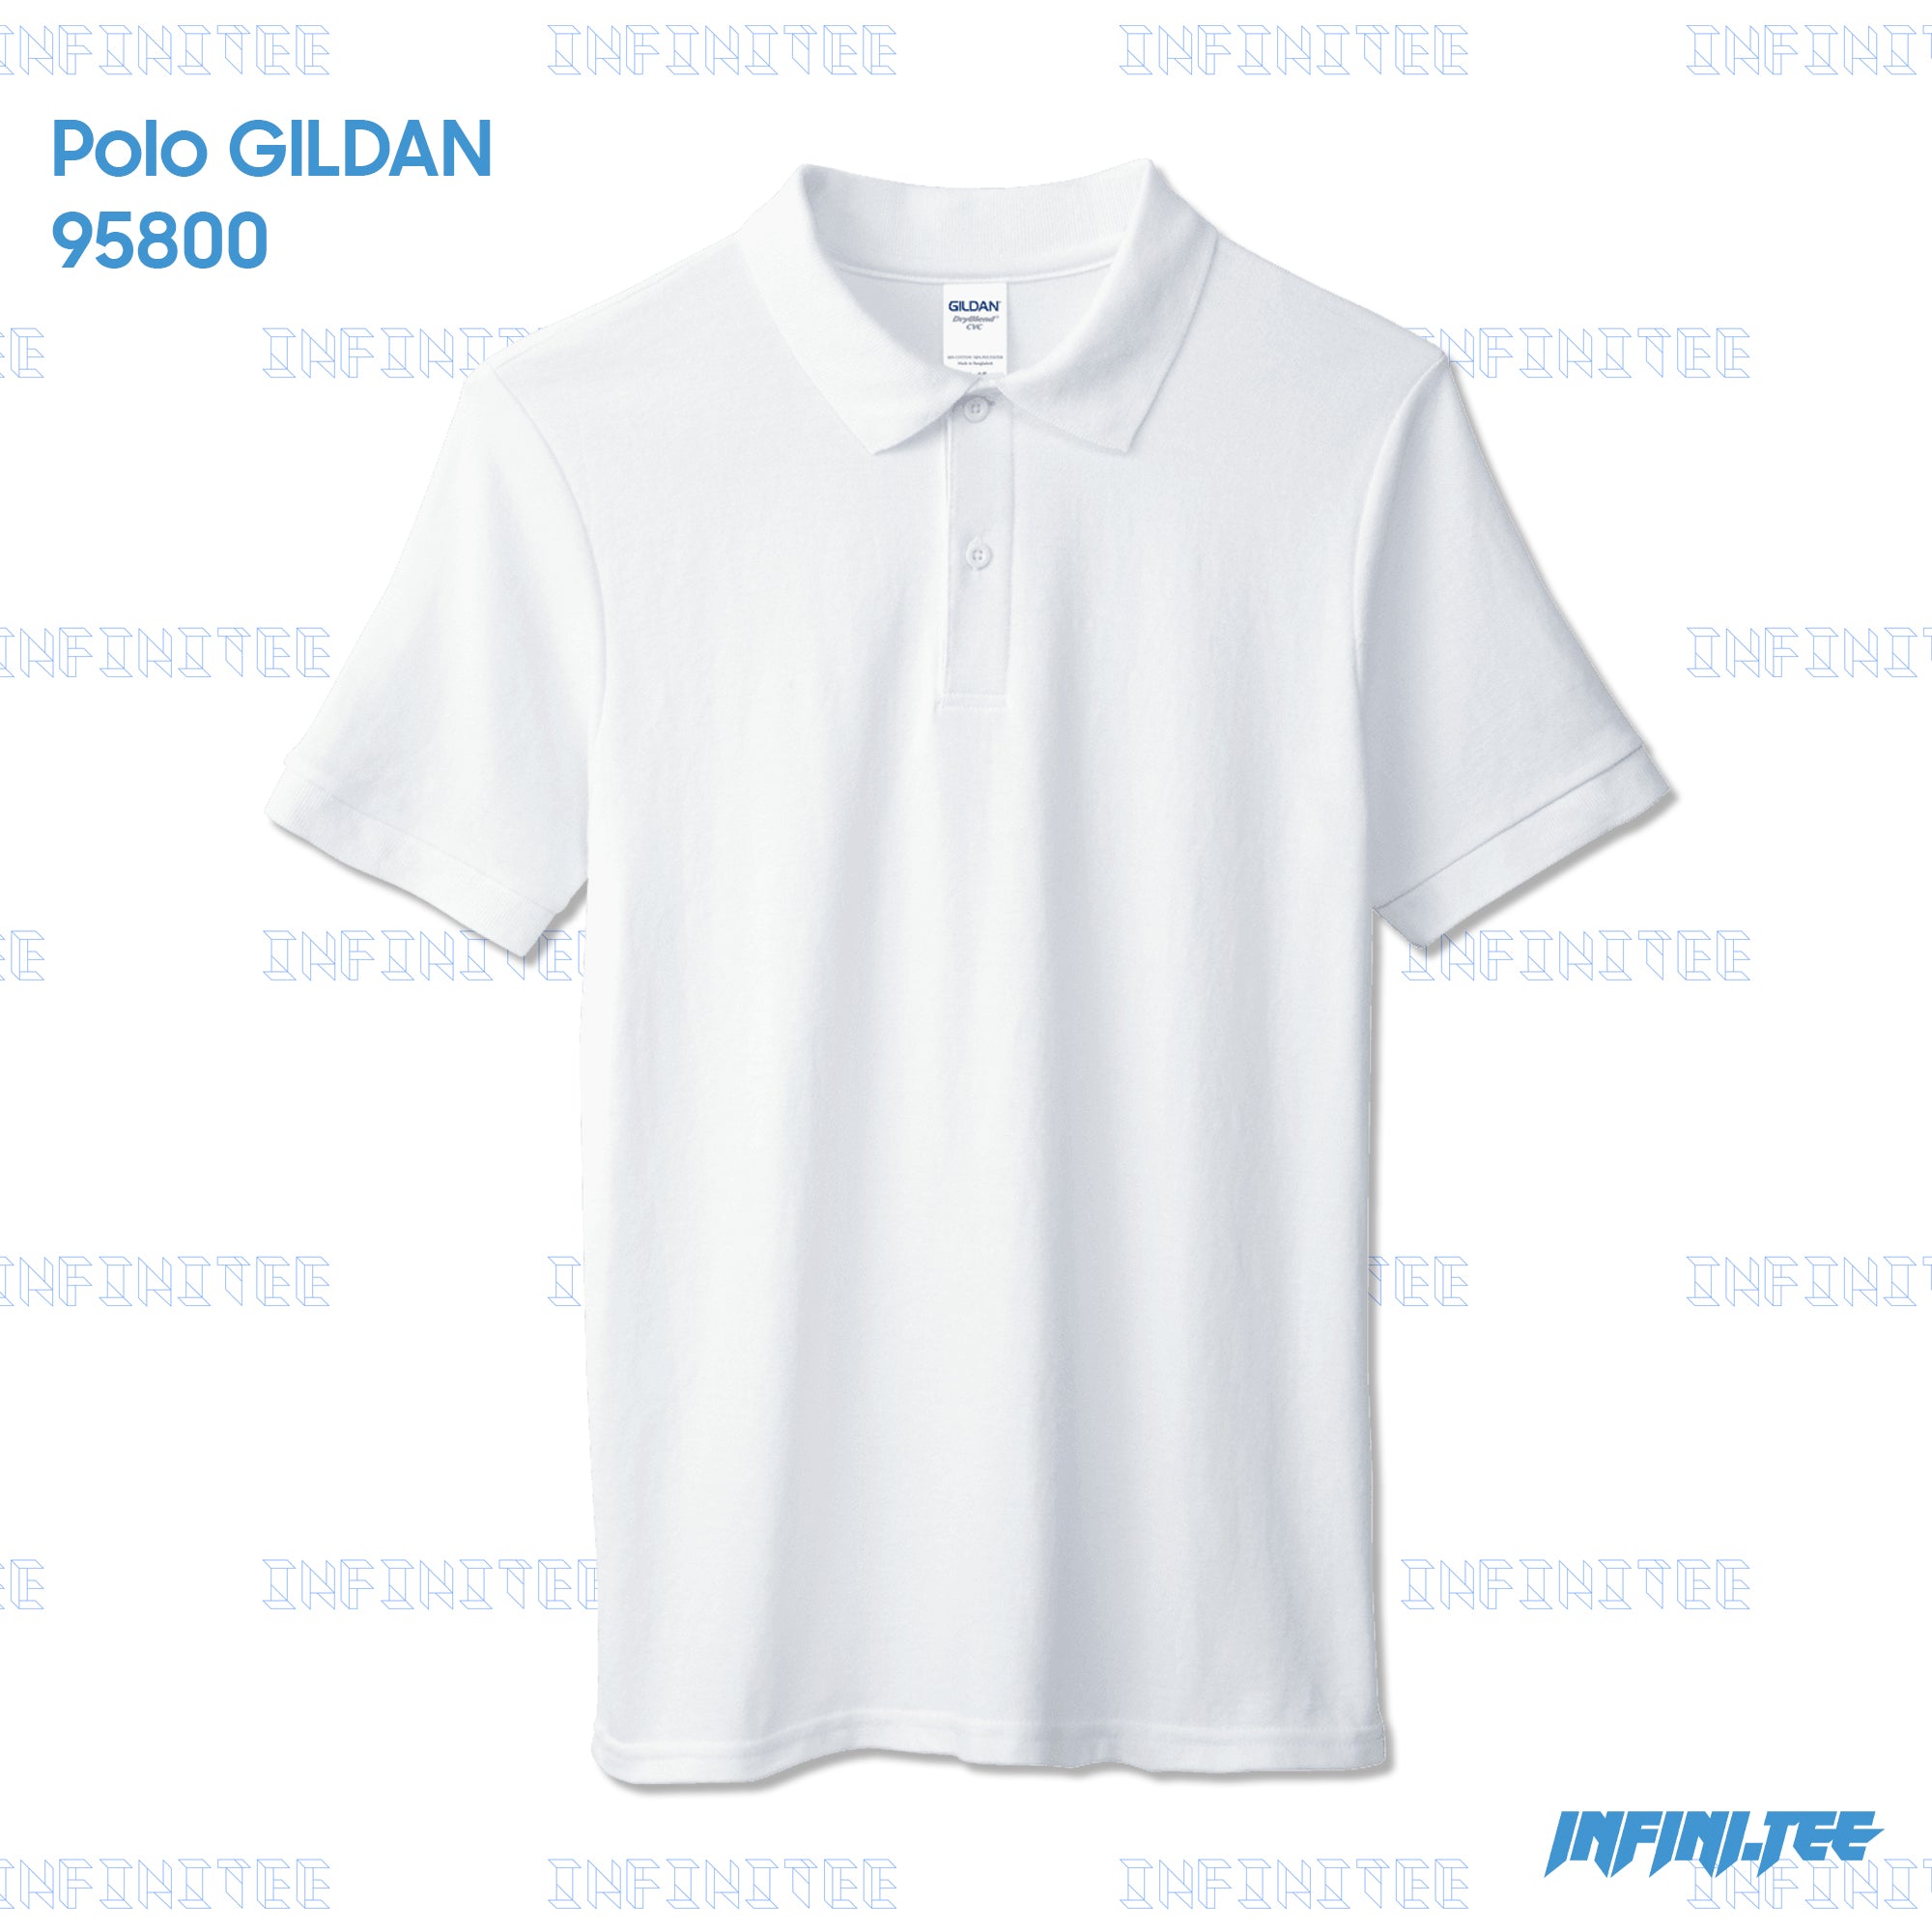 POLO 95800 GILDAN - WHITE